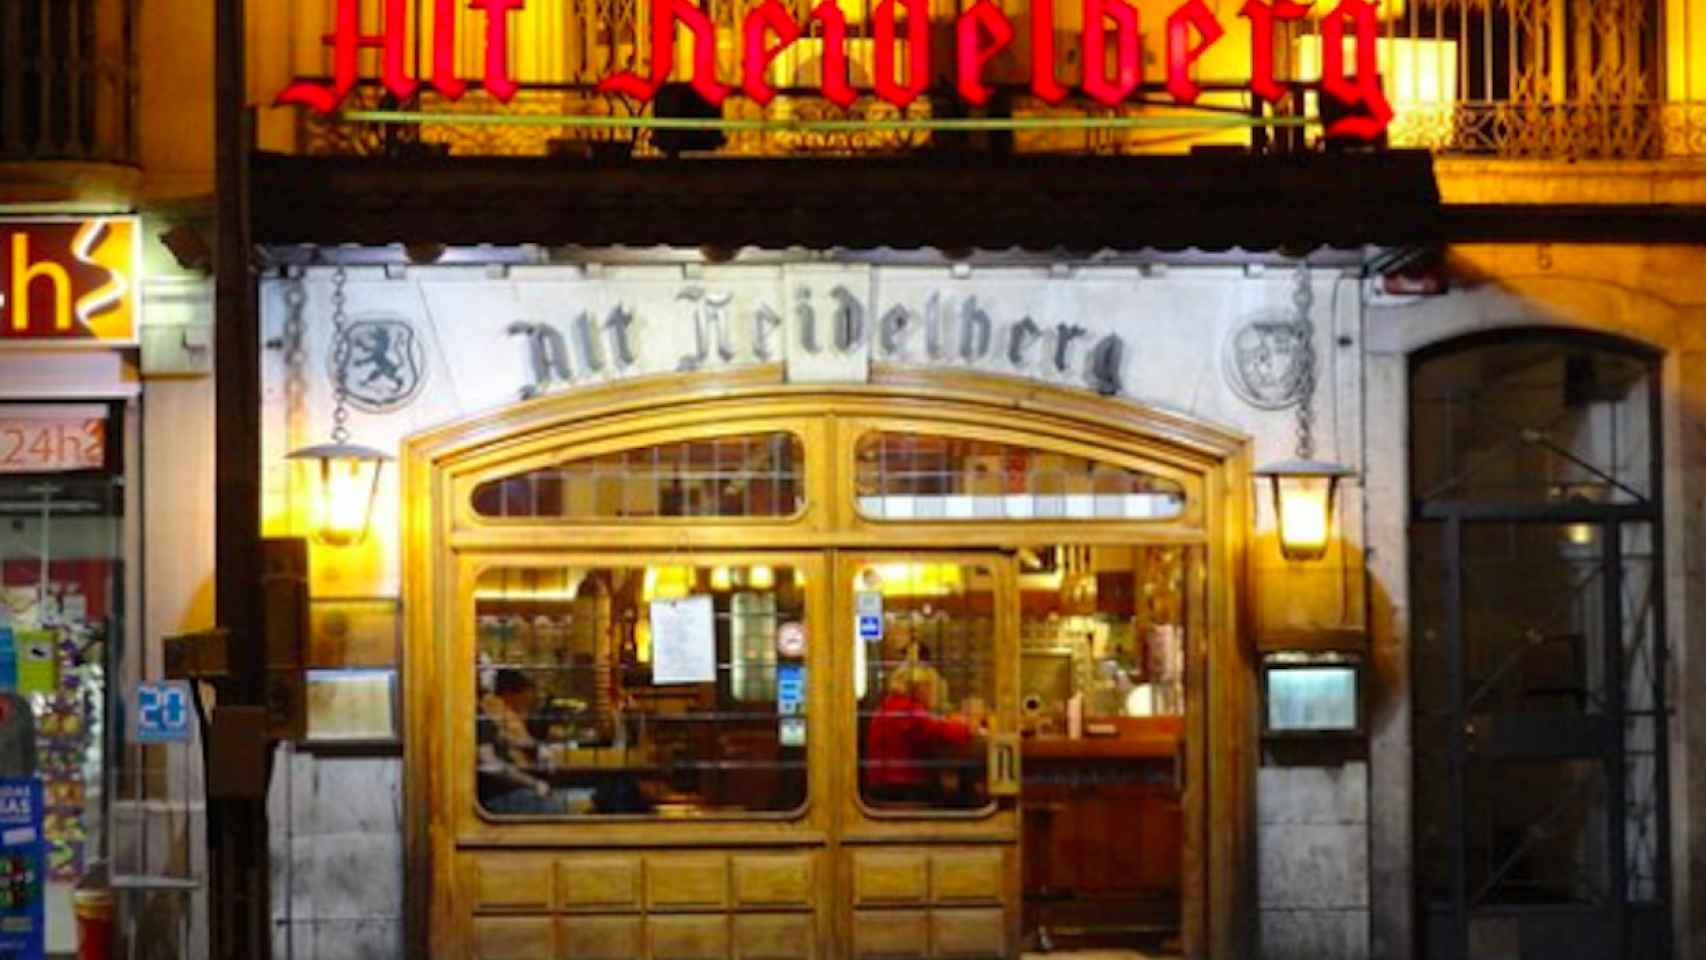 Imagen de la cervecería Alt Heidelberg de Barcelona, situada en Ronda Universitat